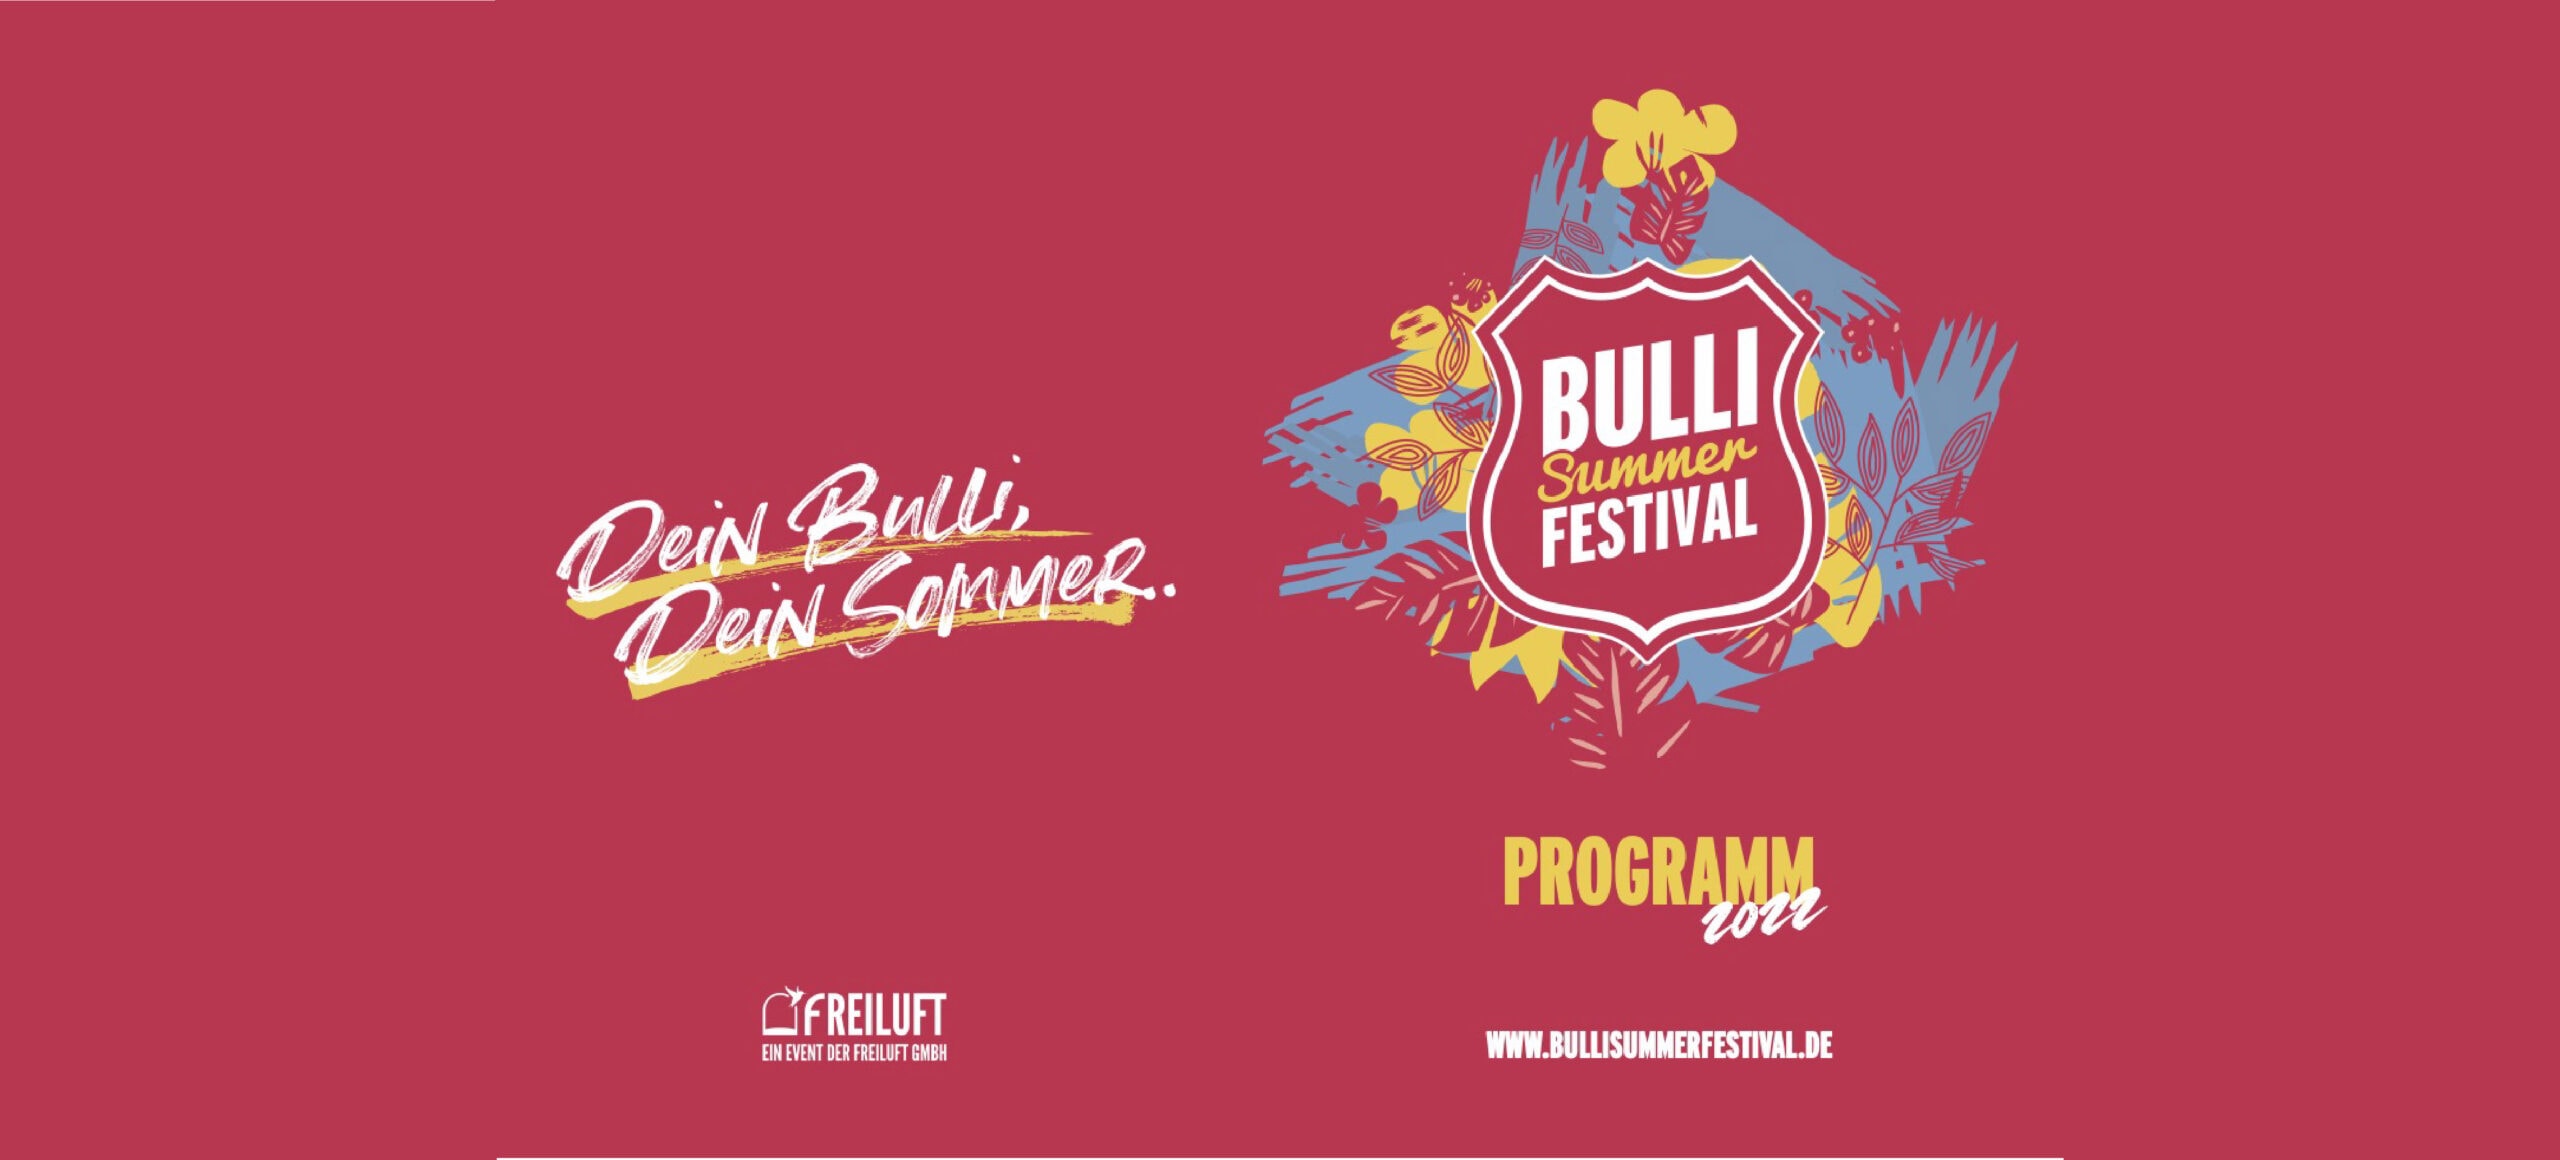 The program for the Bulli Summer Festival 22 is complete